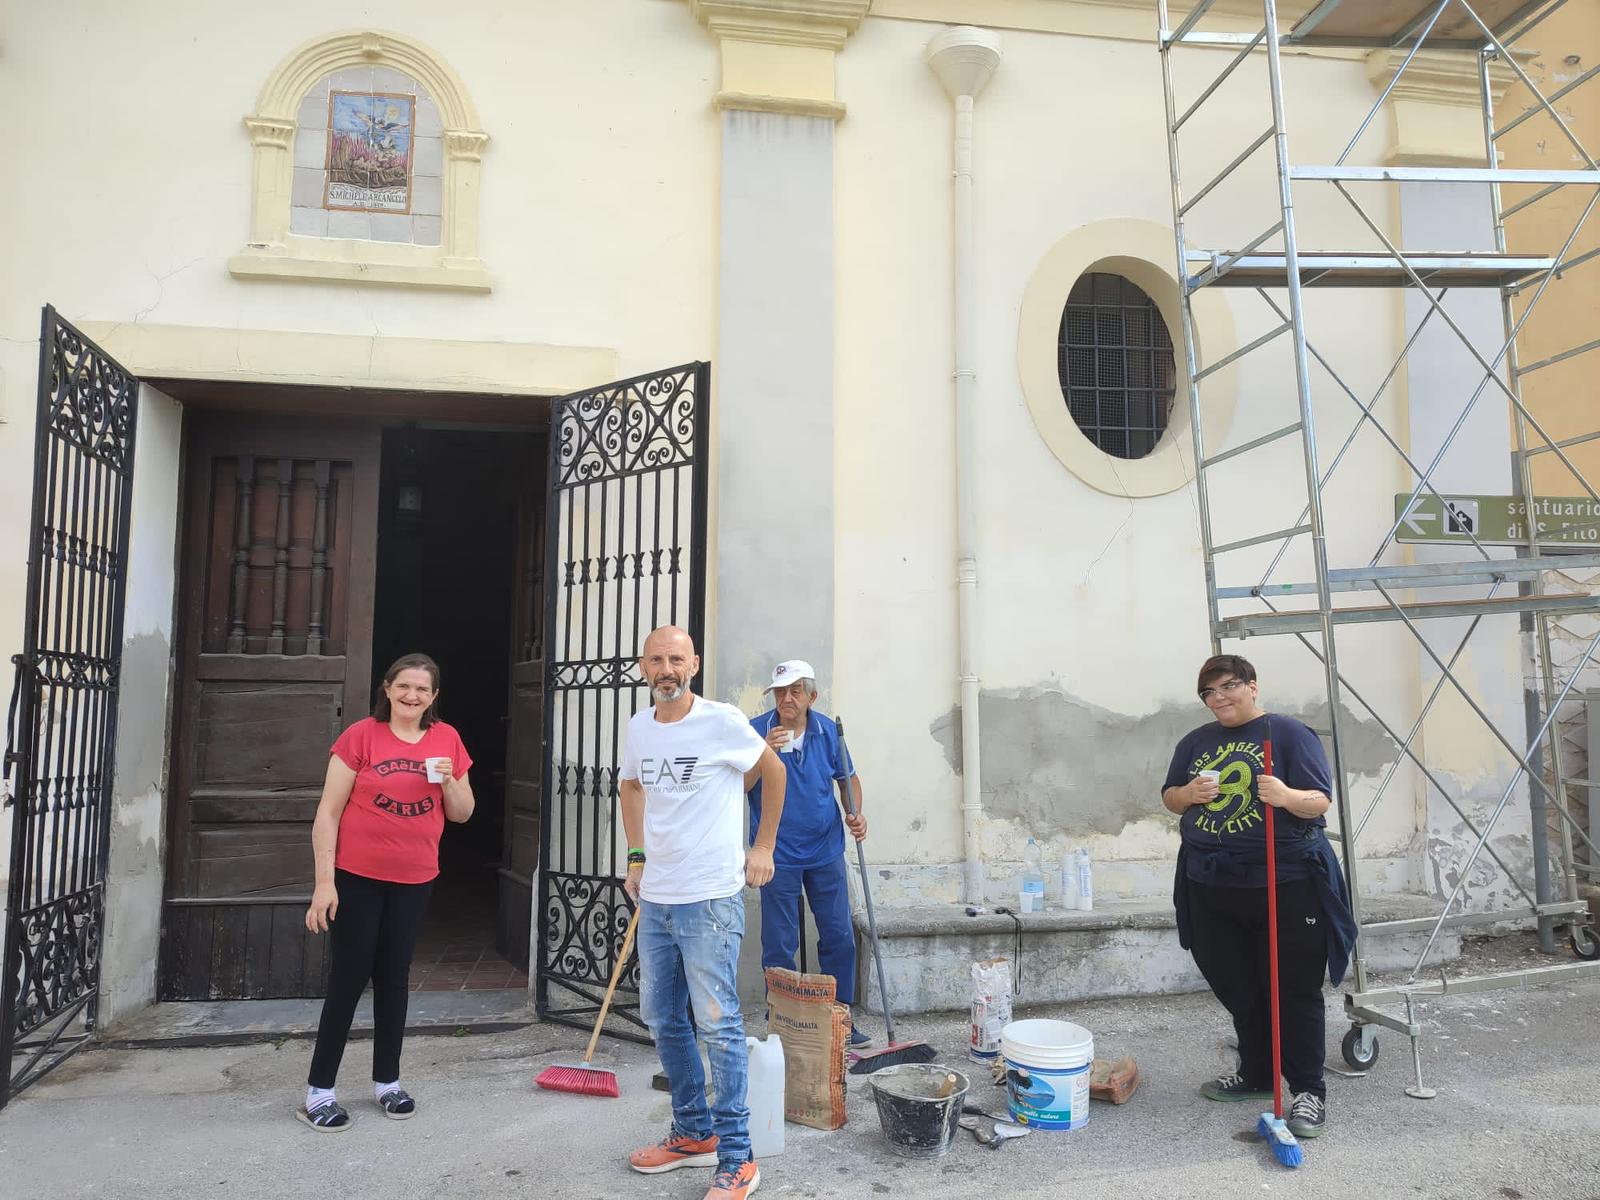 MUGNANO DEL CARDINALE: Solidarietà e impegno sociale,  i ragazzi di Villa Santa Filomena partecipano attivamente ai lavori di rifacimento della facciata della chiesa di San Michele